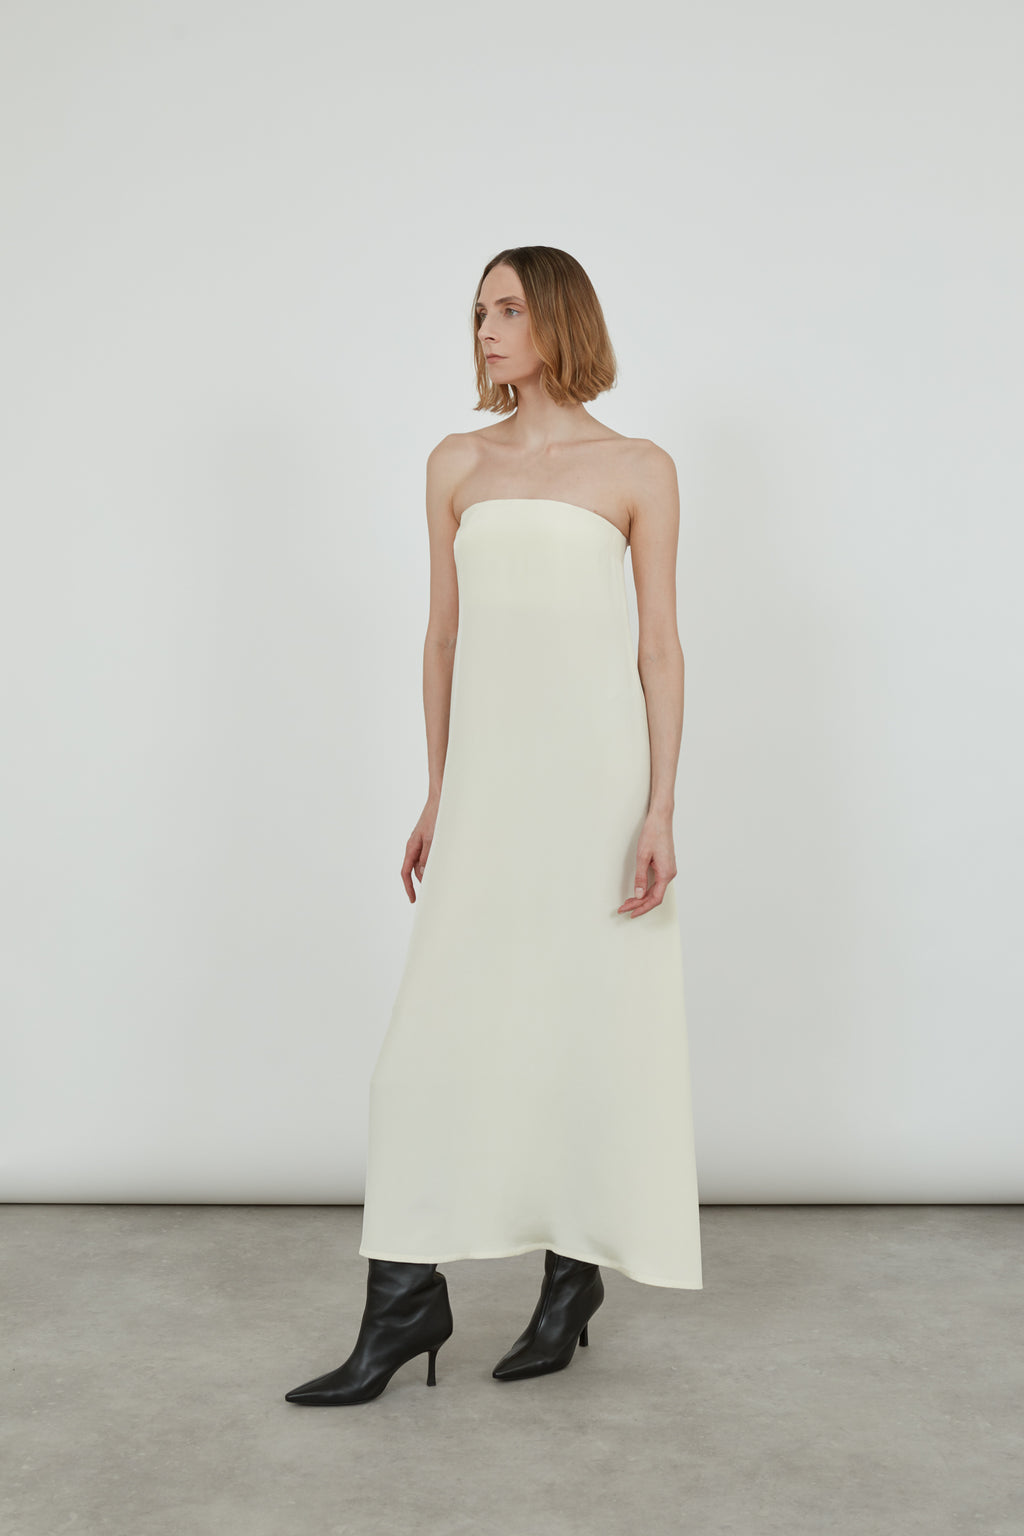 Woman wearing a cream bandeau dress looking sideways.